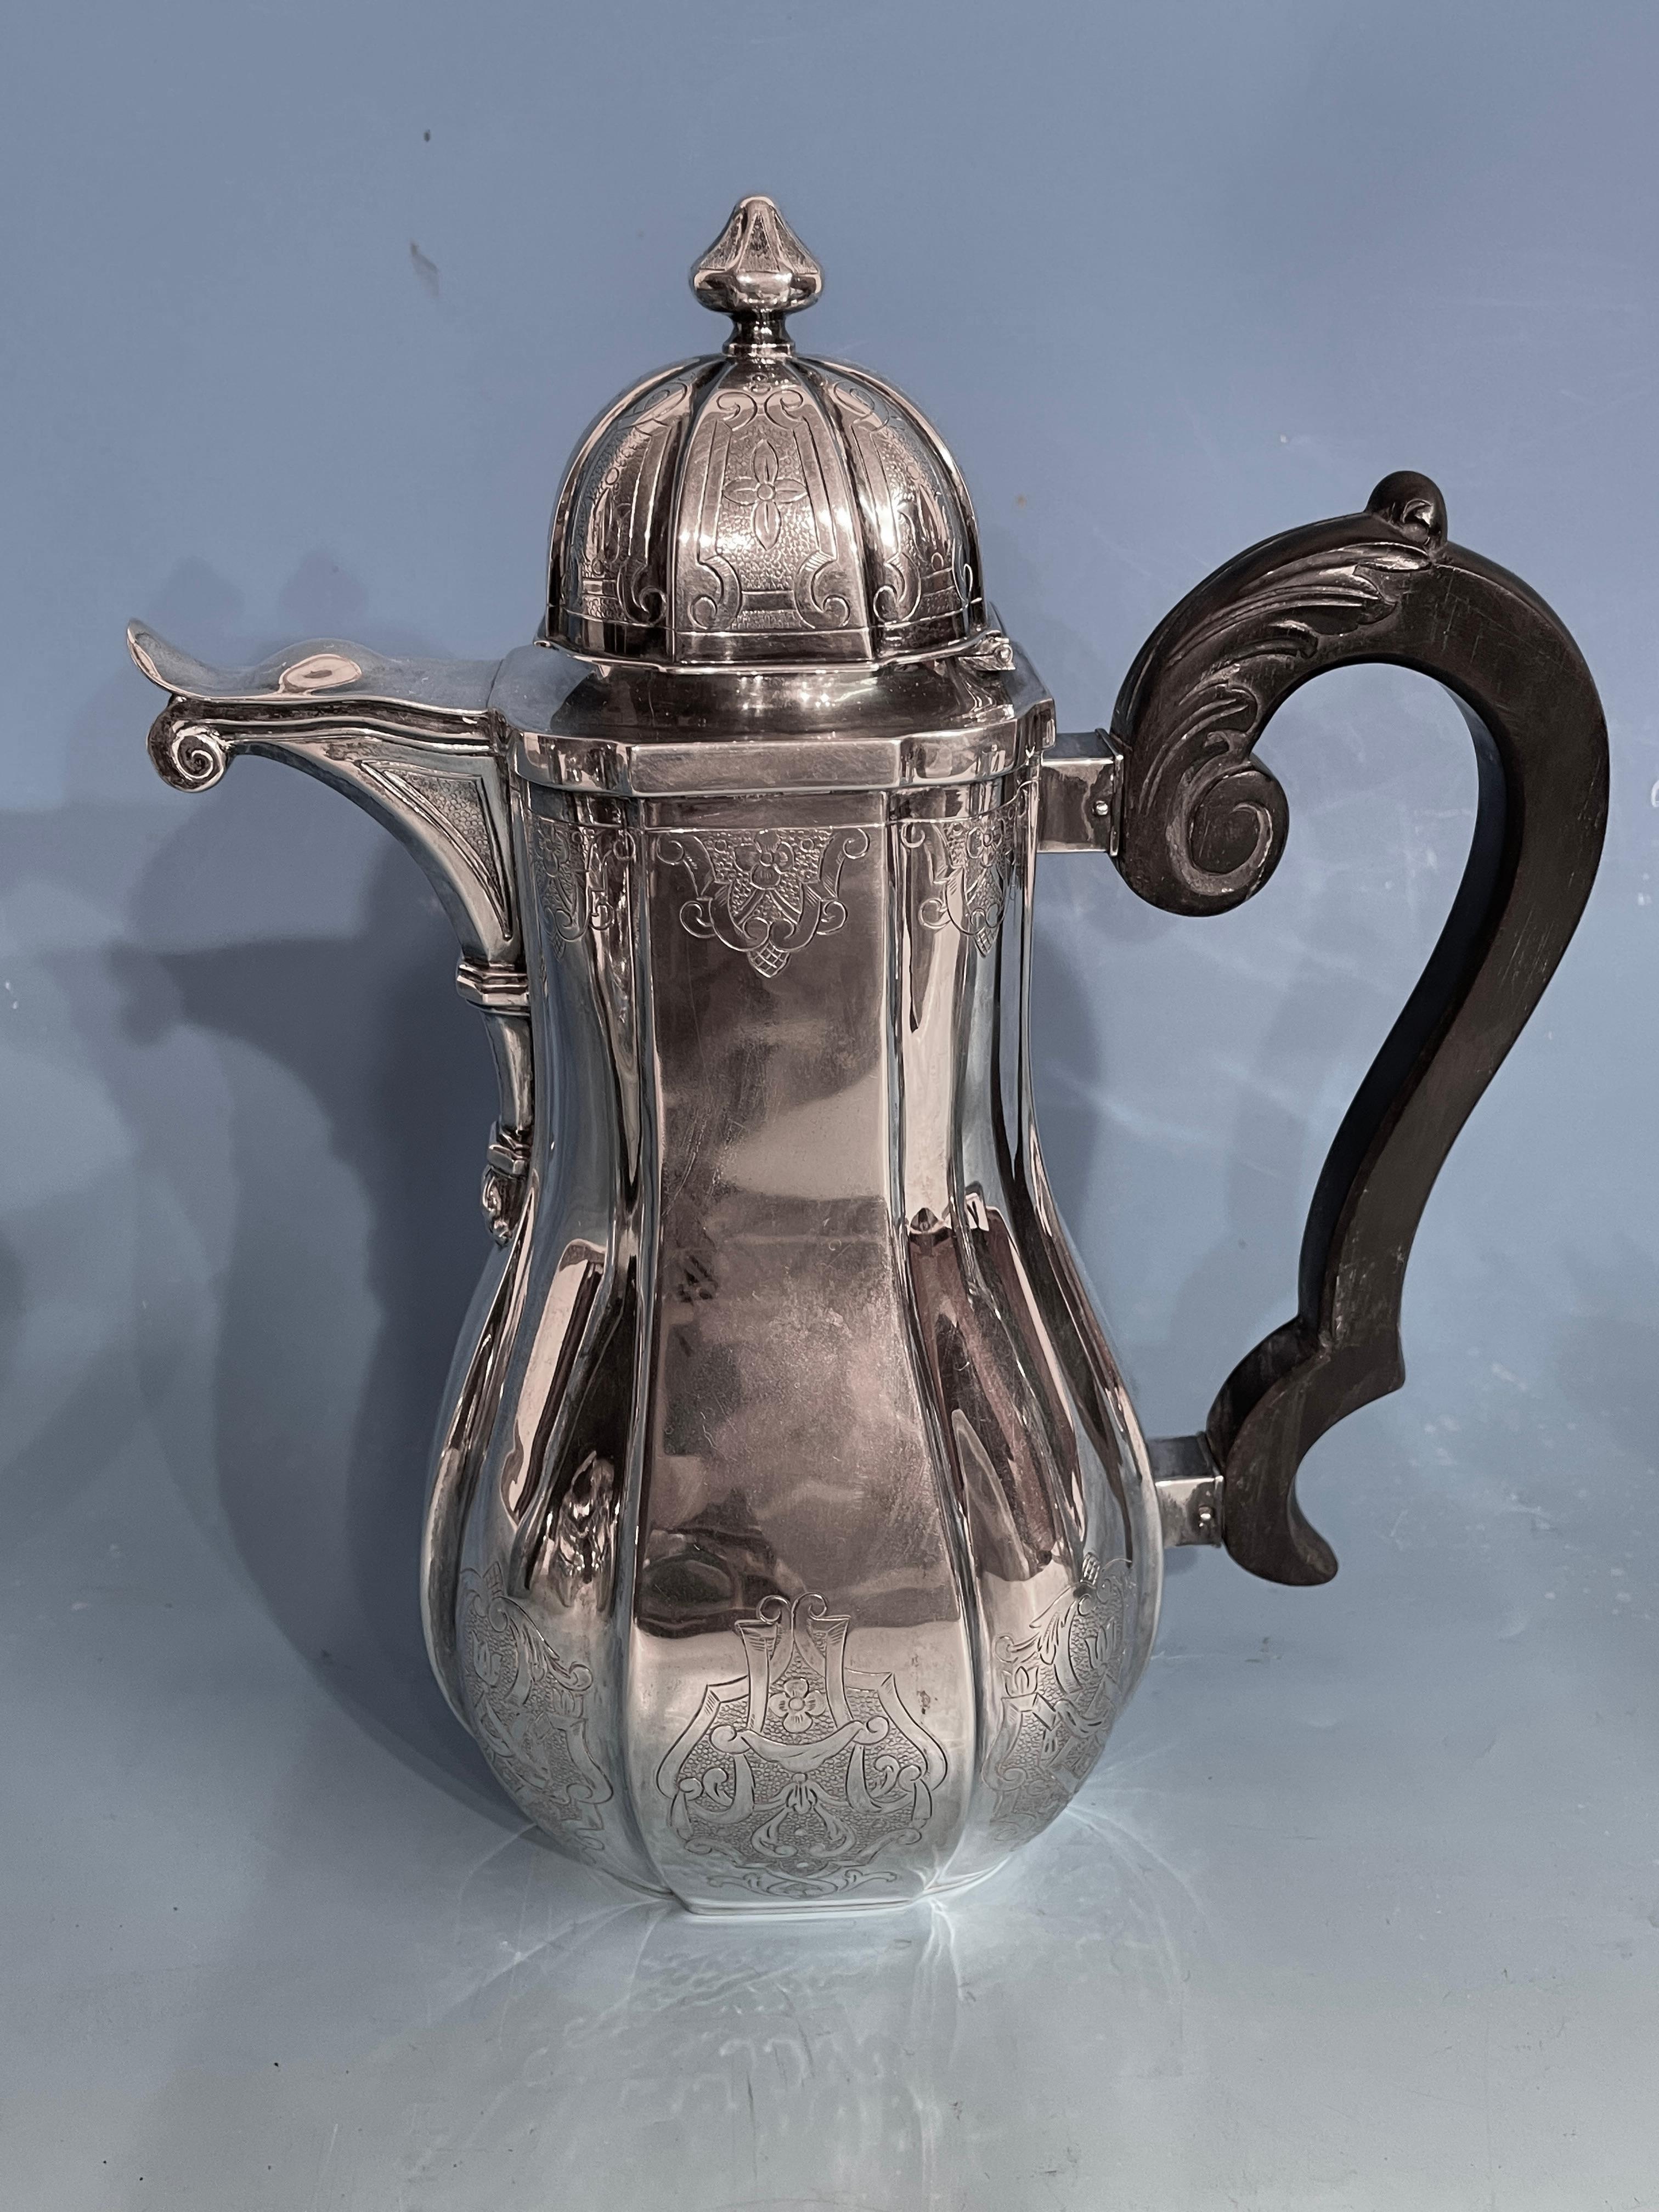 Silbernes Kaffee- und Teeservice, Belgien 19. Jahrhundert
Das Design dieses schönen Kaffee- und Teesets ist vom französischen Regence-Stil des 18. Jahrhunderts inspiriert. Die birnenförmigen Stücke sind mit feinem Gitterwerk verziert. Die Kaffee-,